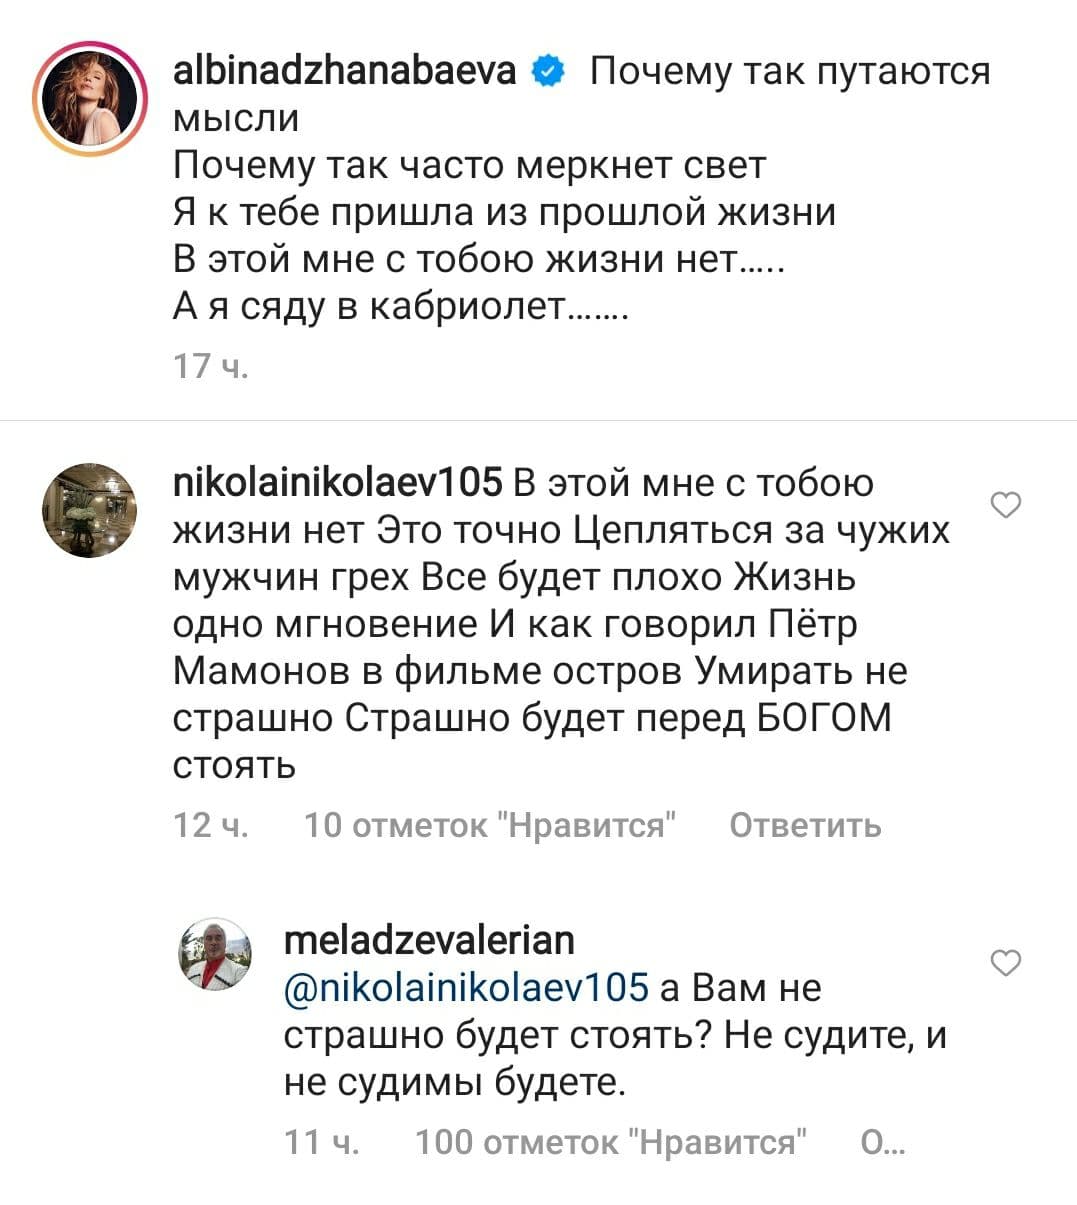 Валерий Меладзе ответил в комментариях тем, кто обвиняет его жену Альбину Джанабаеву в грехе из-за связи с женатым